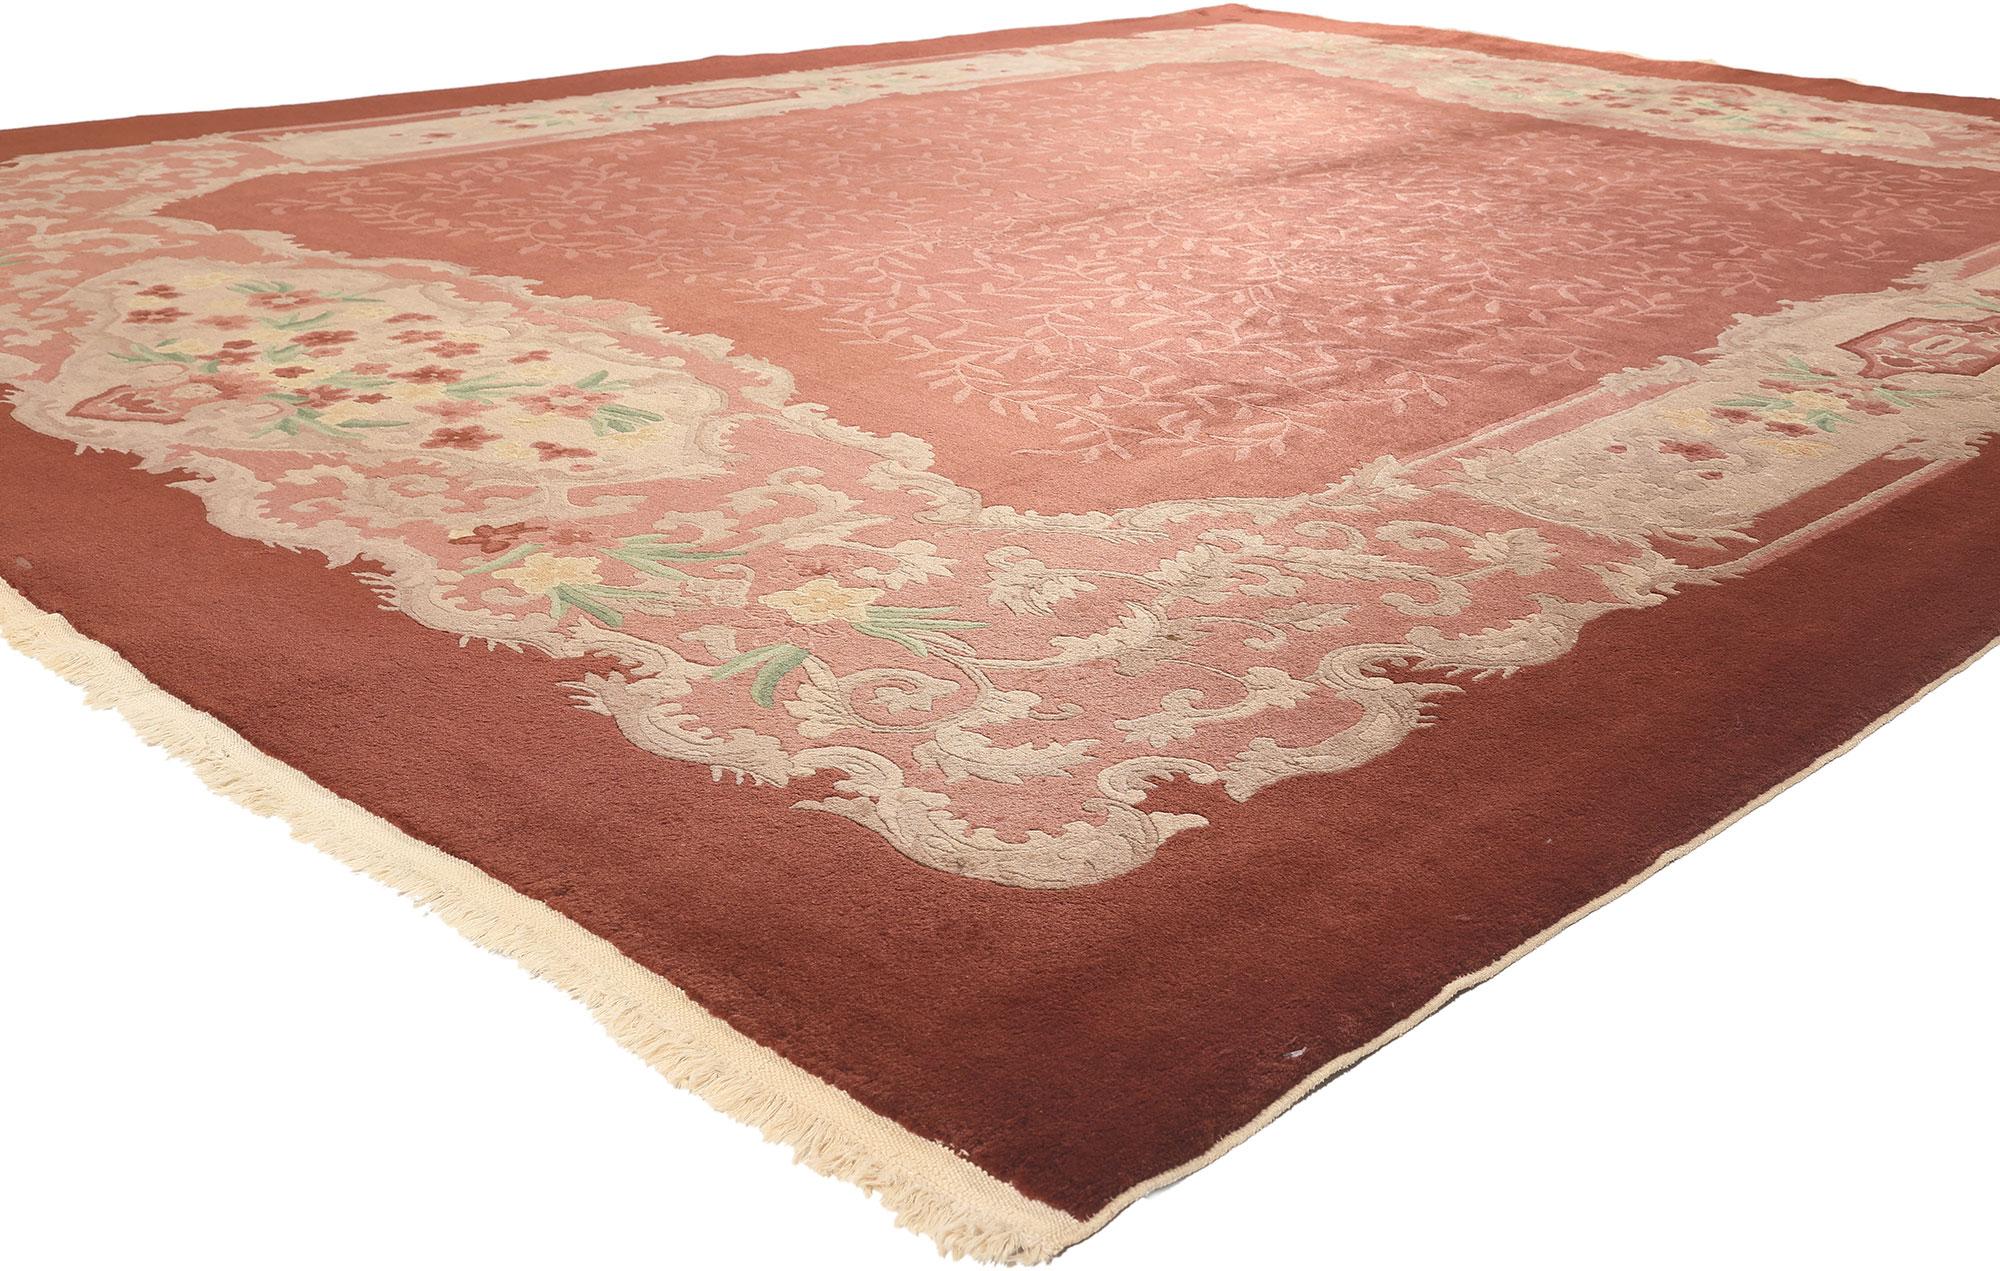 70603, antiker chinesischer Art-Déco-Teppich des frühen 20. Jahrhunderts. Bringen Sie mit diesem chinesischen Art-Déco-Teppich aus dem frühen 20. Jahrhundert ein wenig Farbe in Ihr Zuhause. Eine lebendige Verschmelzung des rustikalen gebrannten